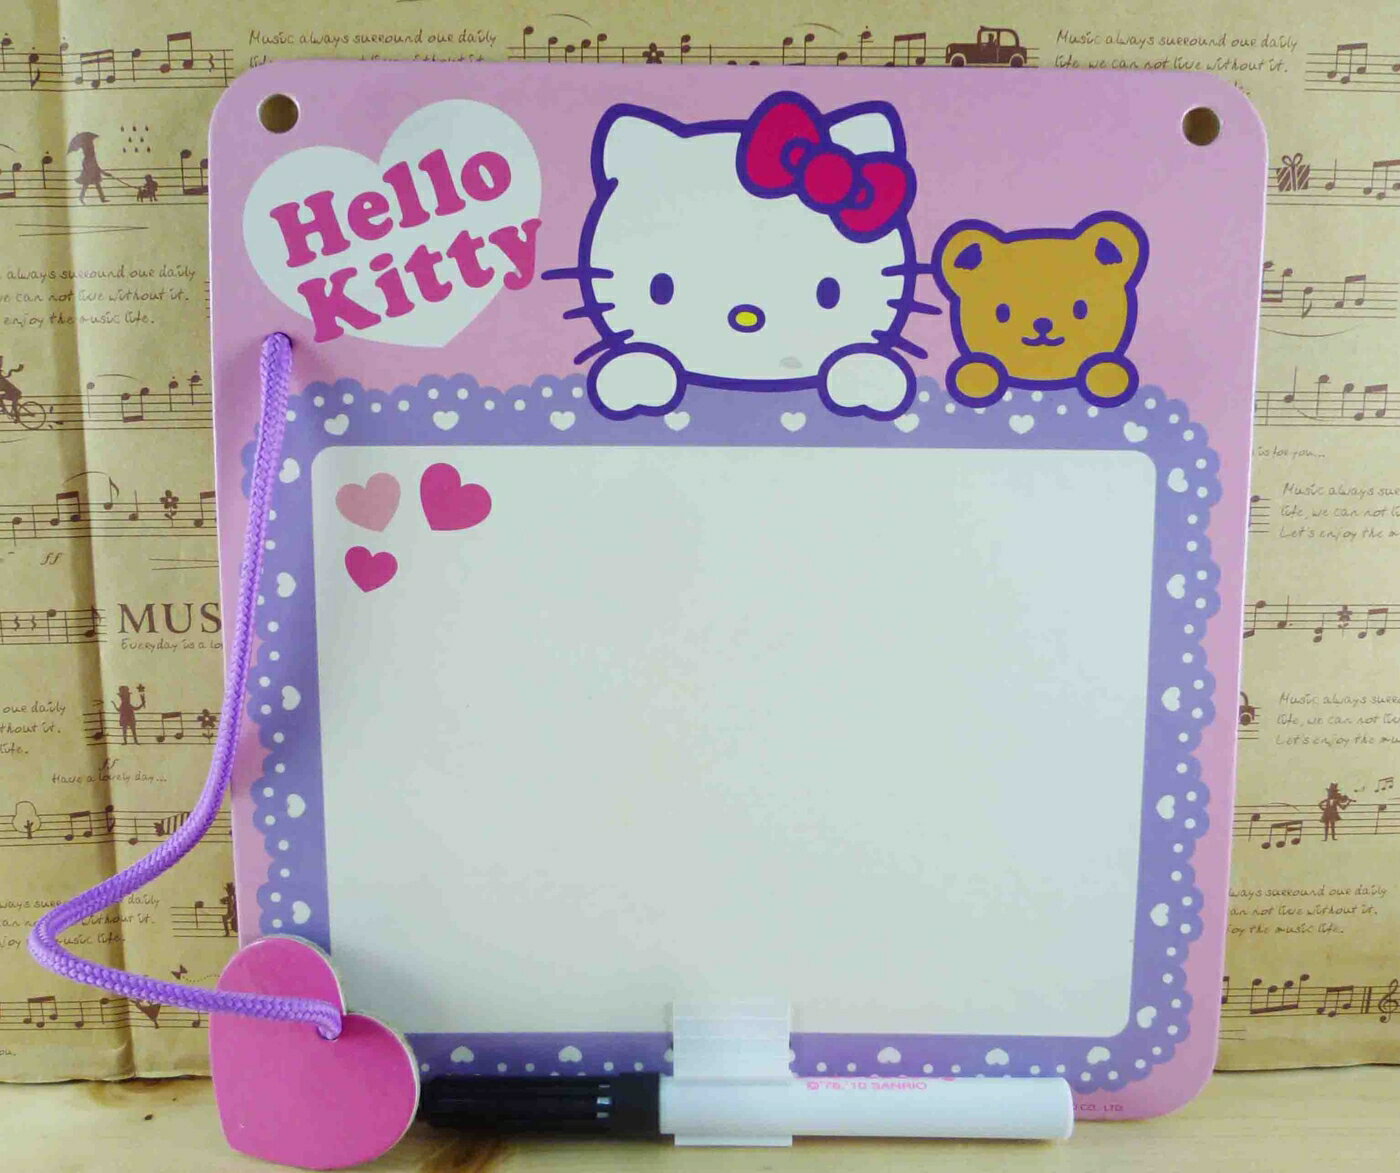 【震撼精品百貨】Hello Kitty 凱蒂貓 白板-熊粉紫圖案 震撼日式精品百貨